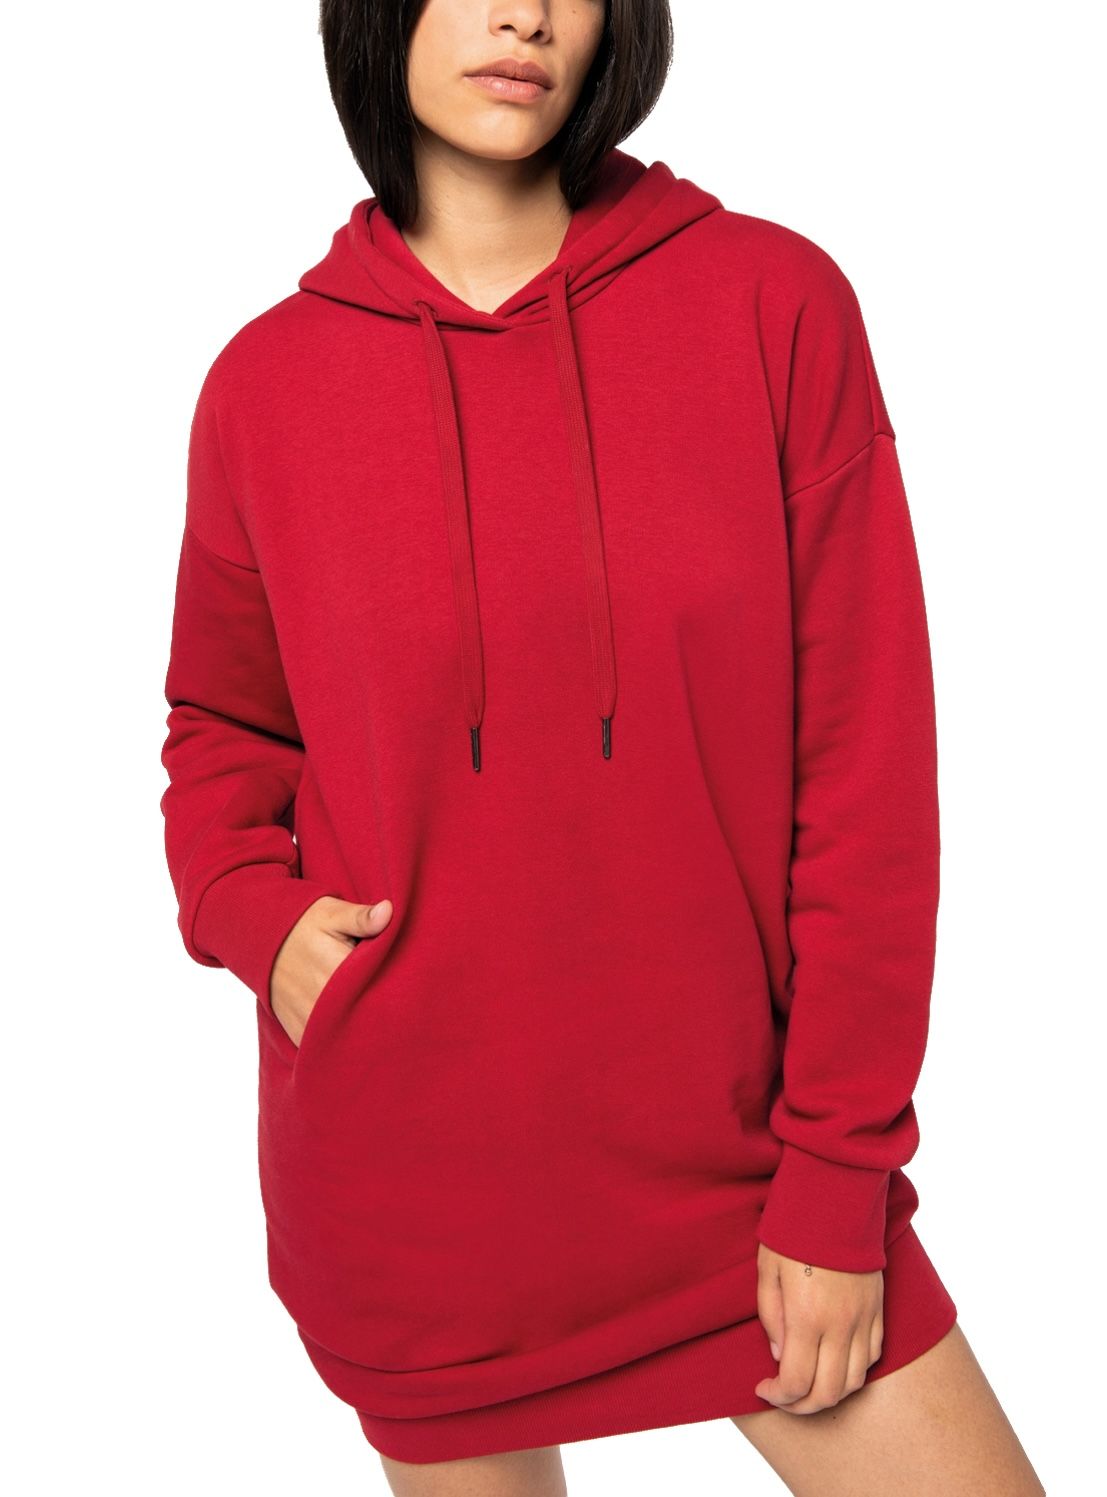 Bild mockup-robe-hoodie-weiblich